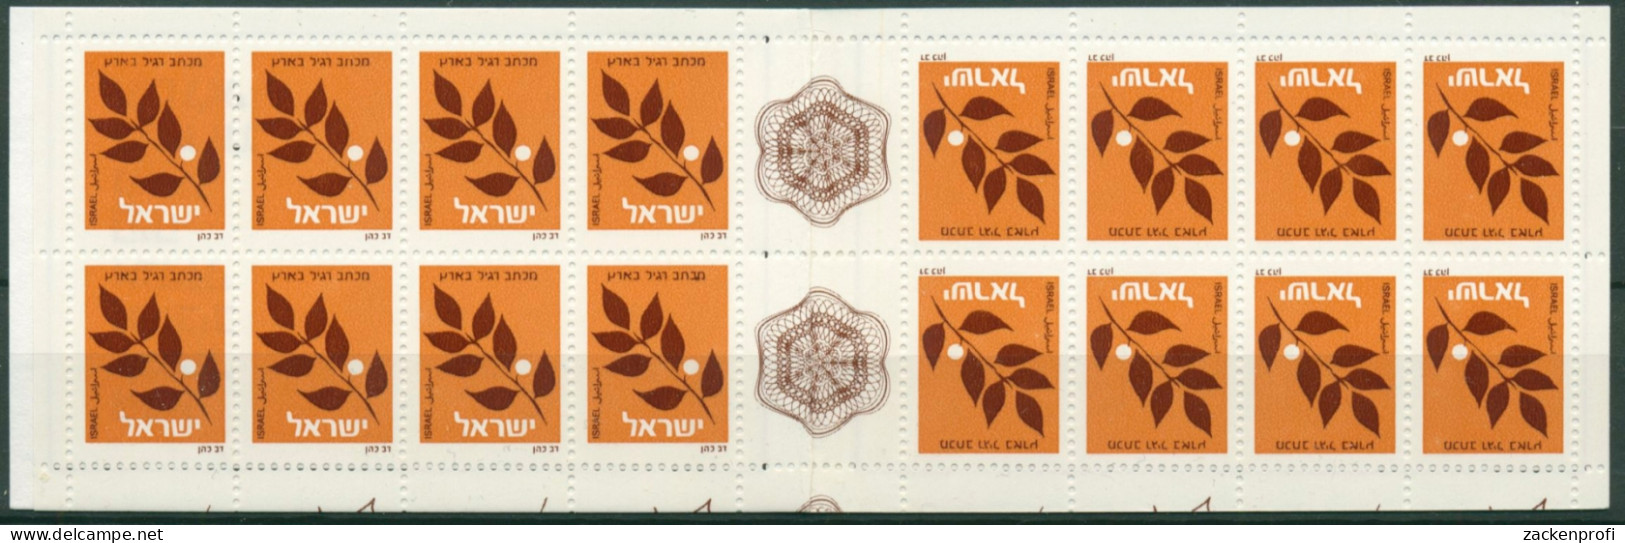 Israel 1982 Ölbaumzweig Markenheftchen 893 A MH Postfrisch (C30342) - Booklets